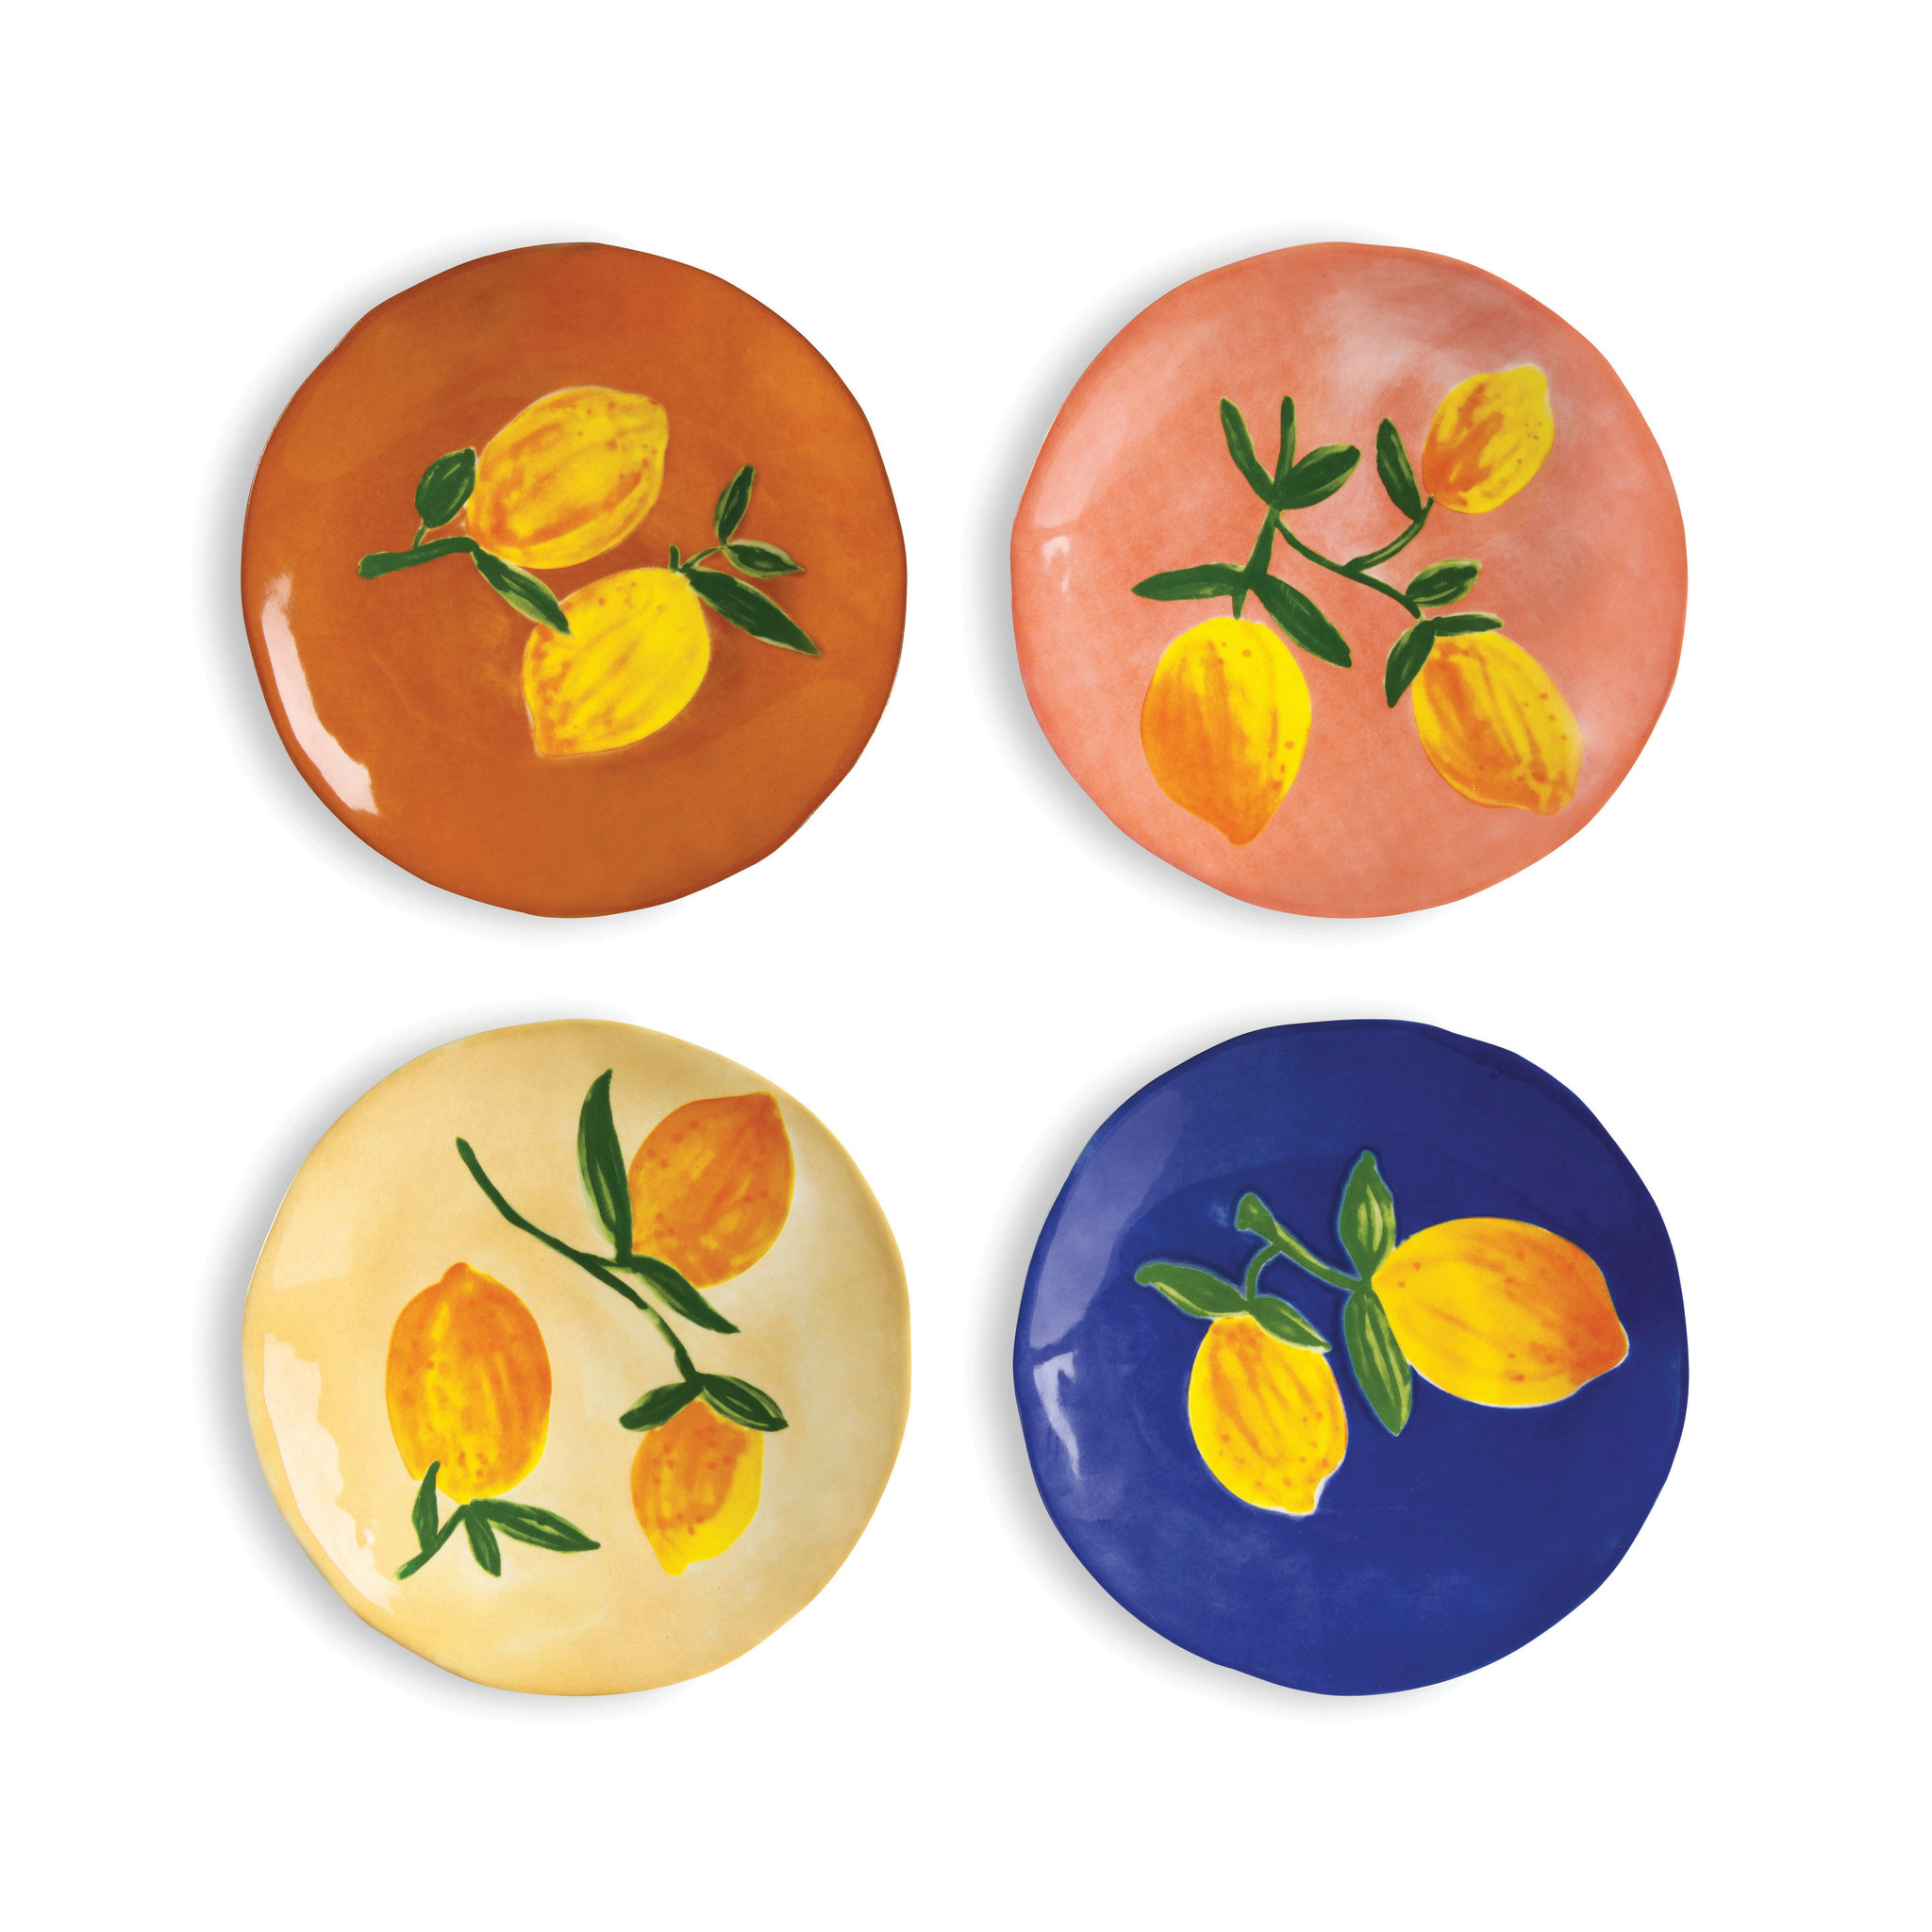 andklevering-plate-lemon-full-colour-set-of-4-1